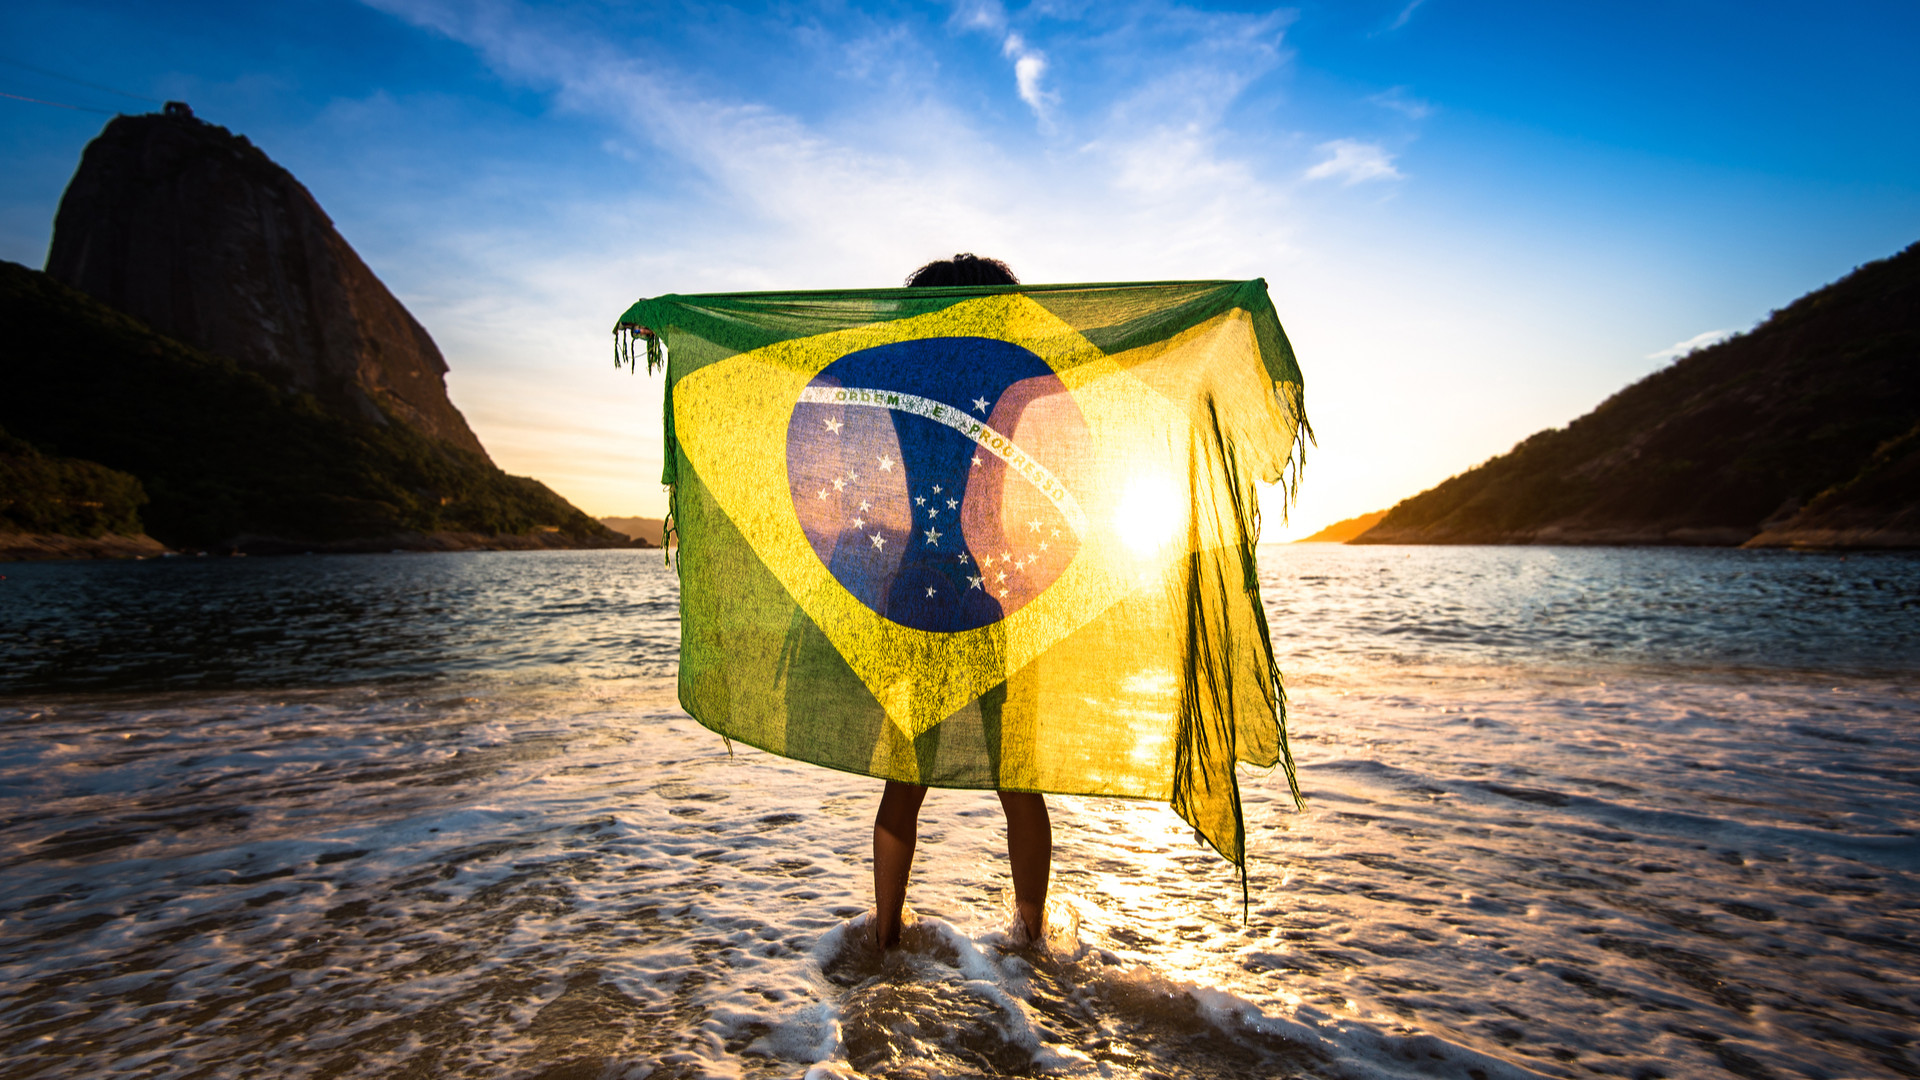 1920x1080 Brazil Flag Ger. Brazil Flag Live Wallpaper 2018 à¤à¤à¤à¤¨